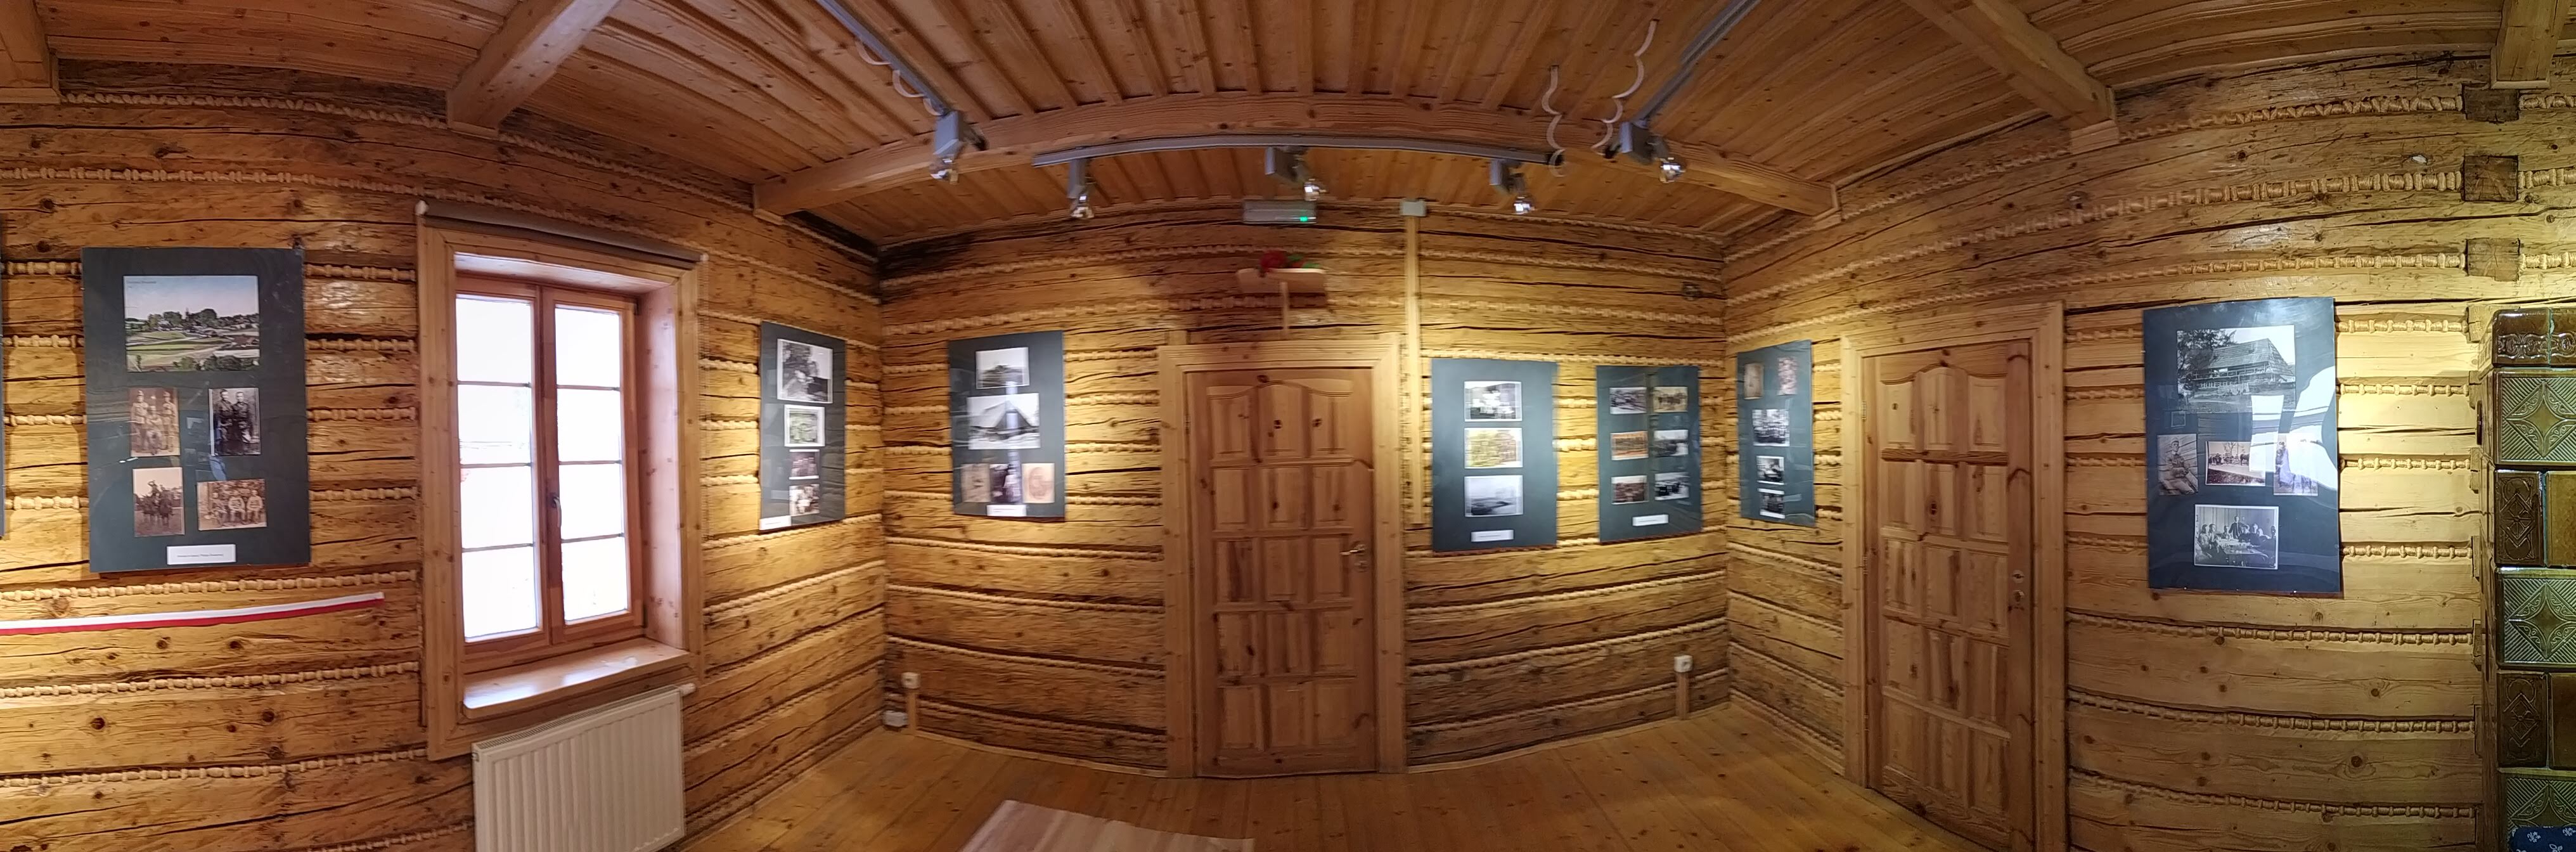 zdjęcie panoramiczne przedstawiające pomieszczenie wystawowe z wiszącymi antyramami, w których umieszczono kopie fotografii oraz opisy